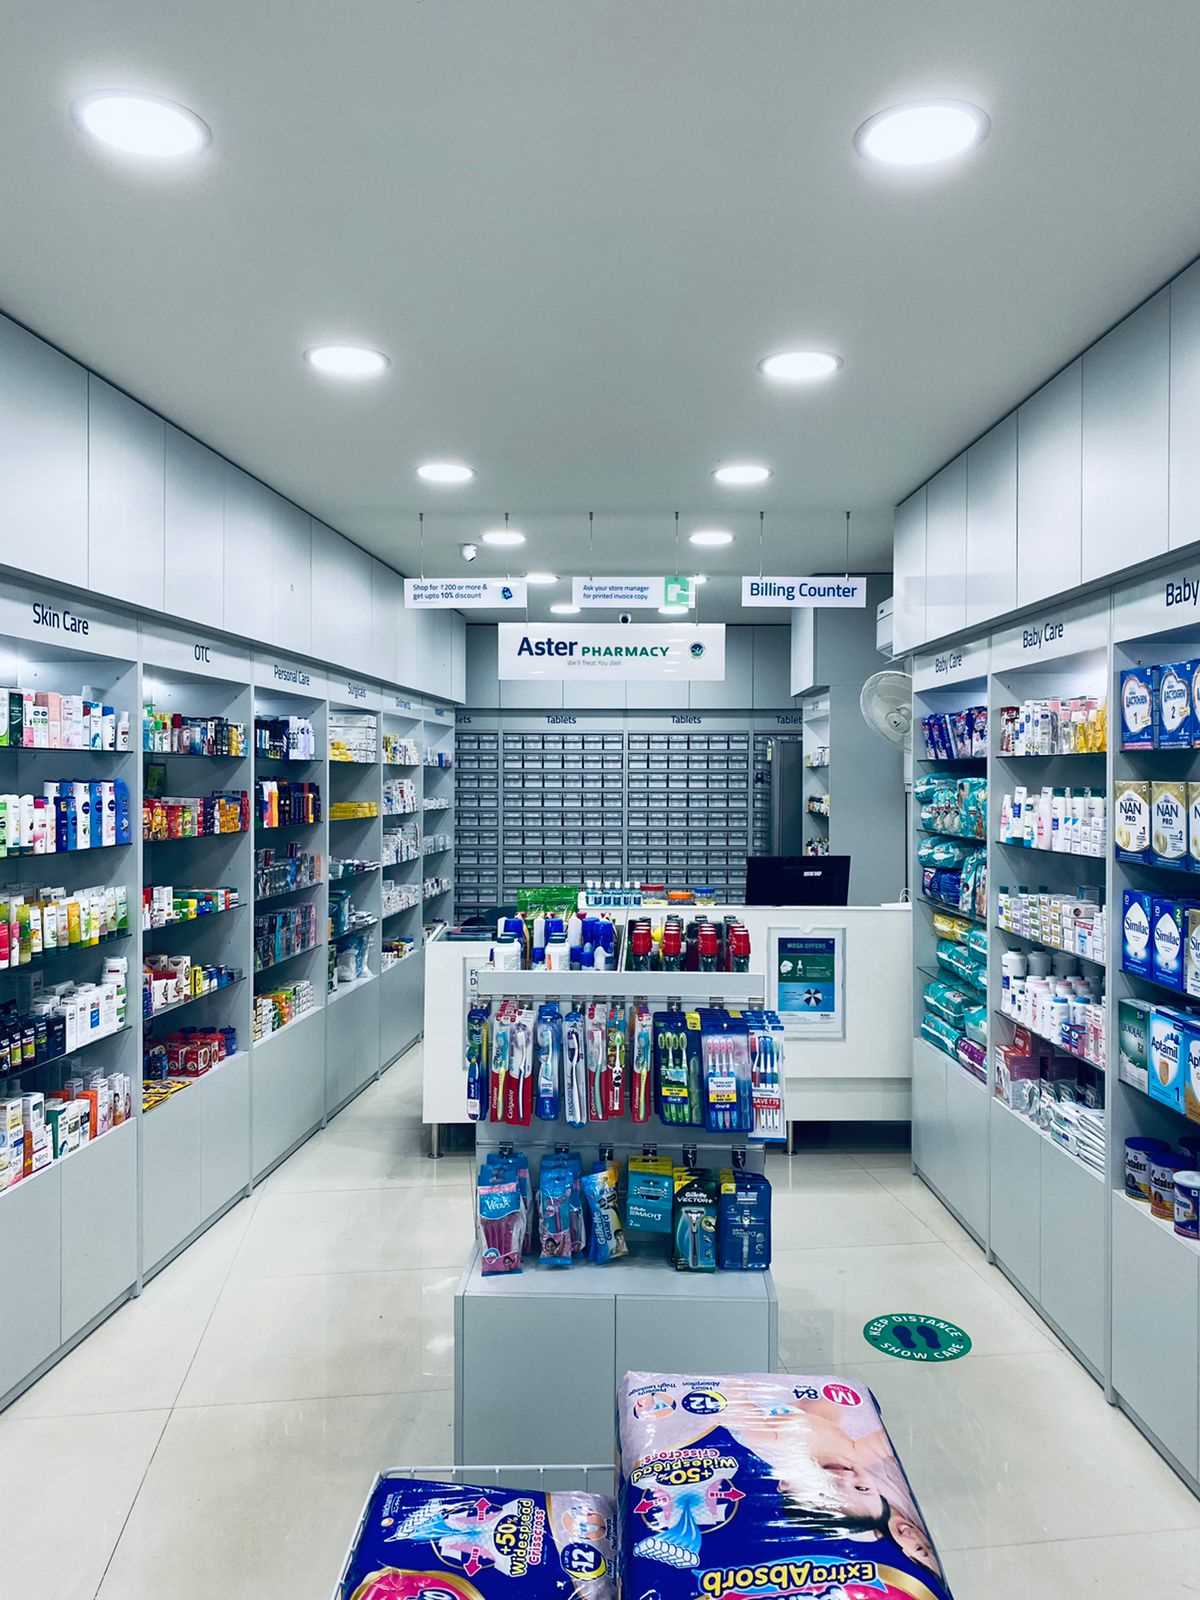 Aster Pharmacy in Kottooli, Kozhikode